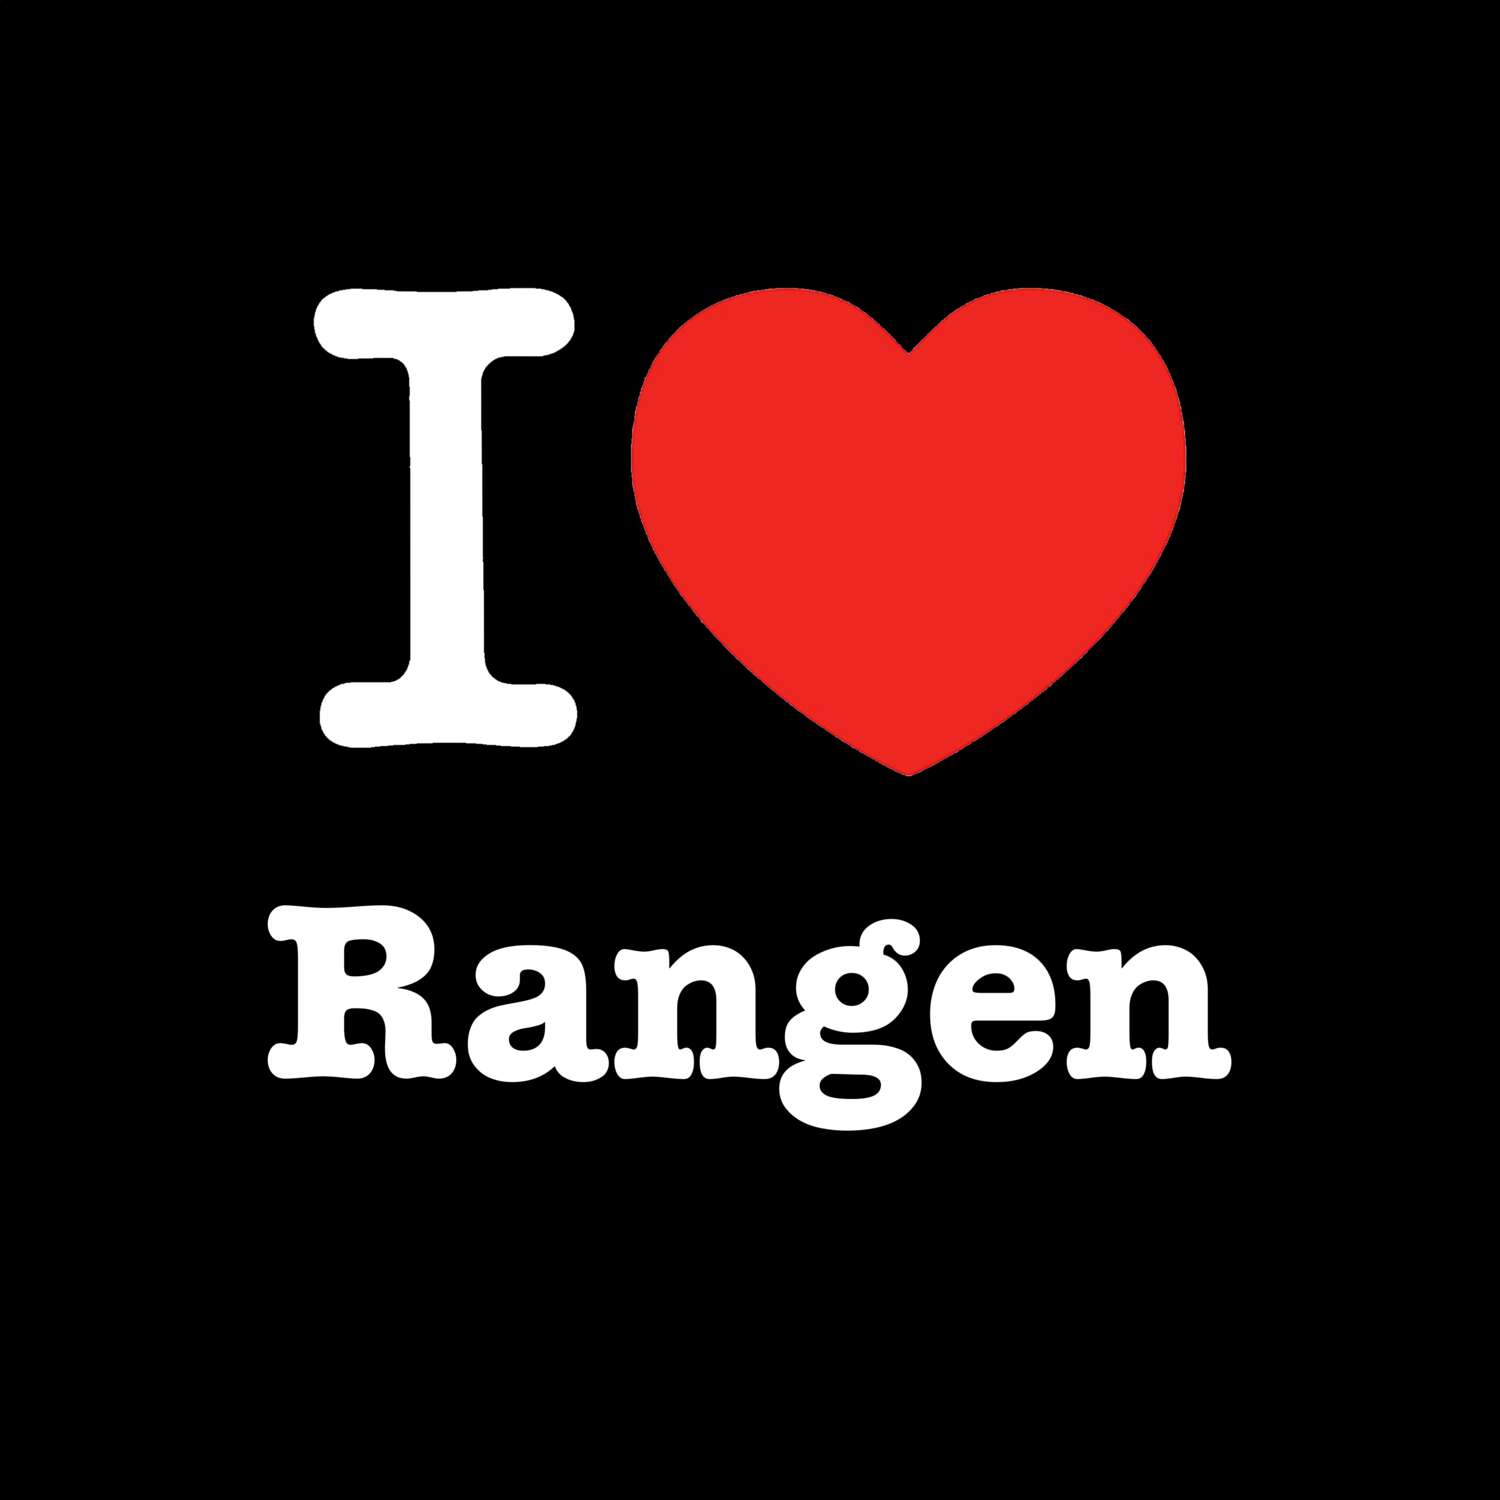 Rangen T-Shirt »I love«